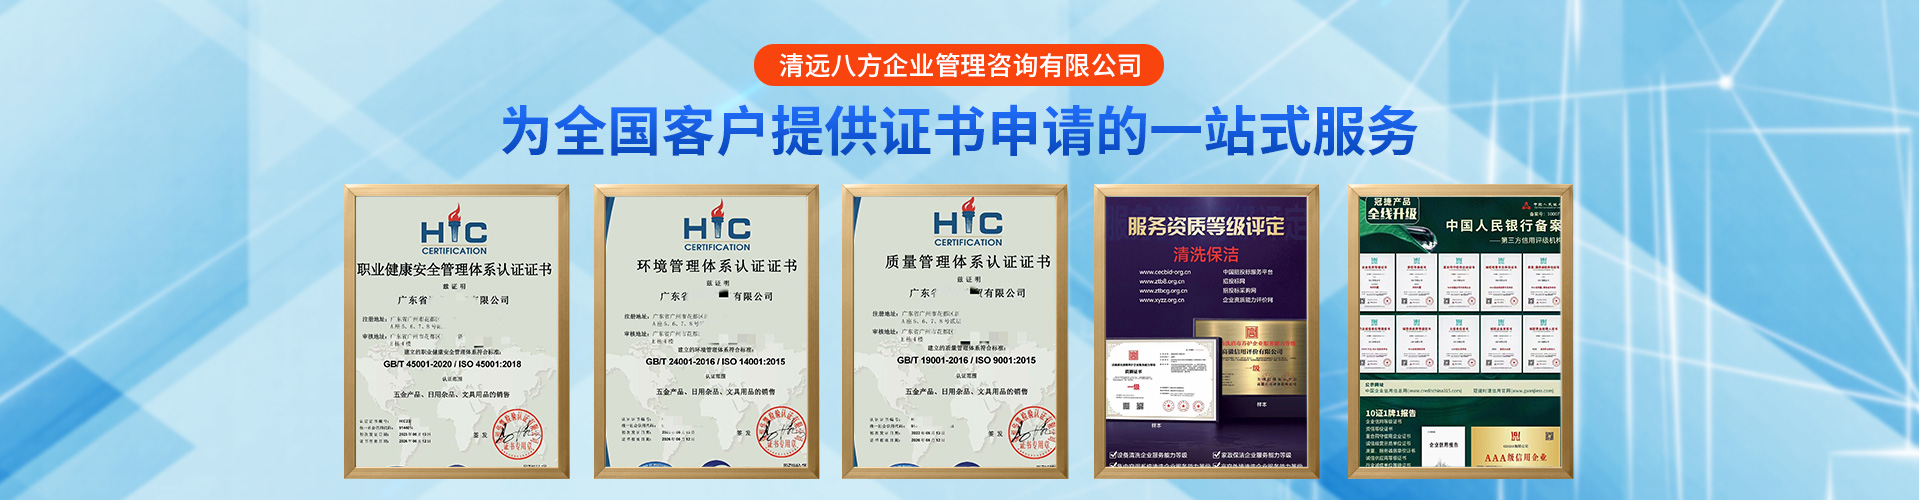 促进国际贸易促进企业发展降低投资风险 北京ISO9001质量管理认证如何申请